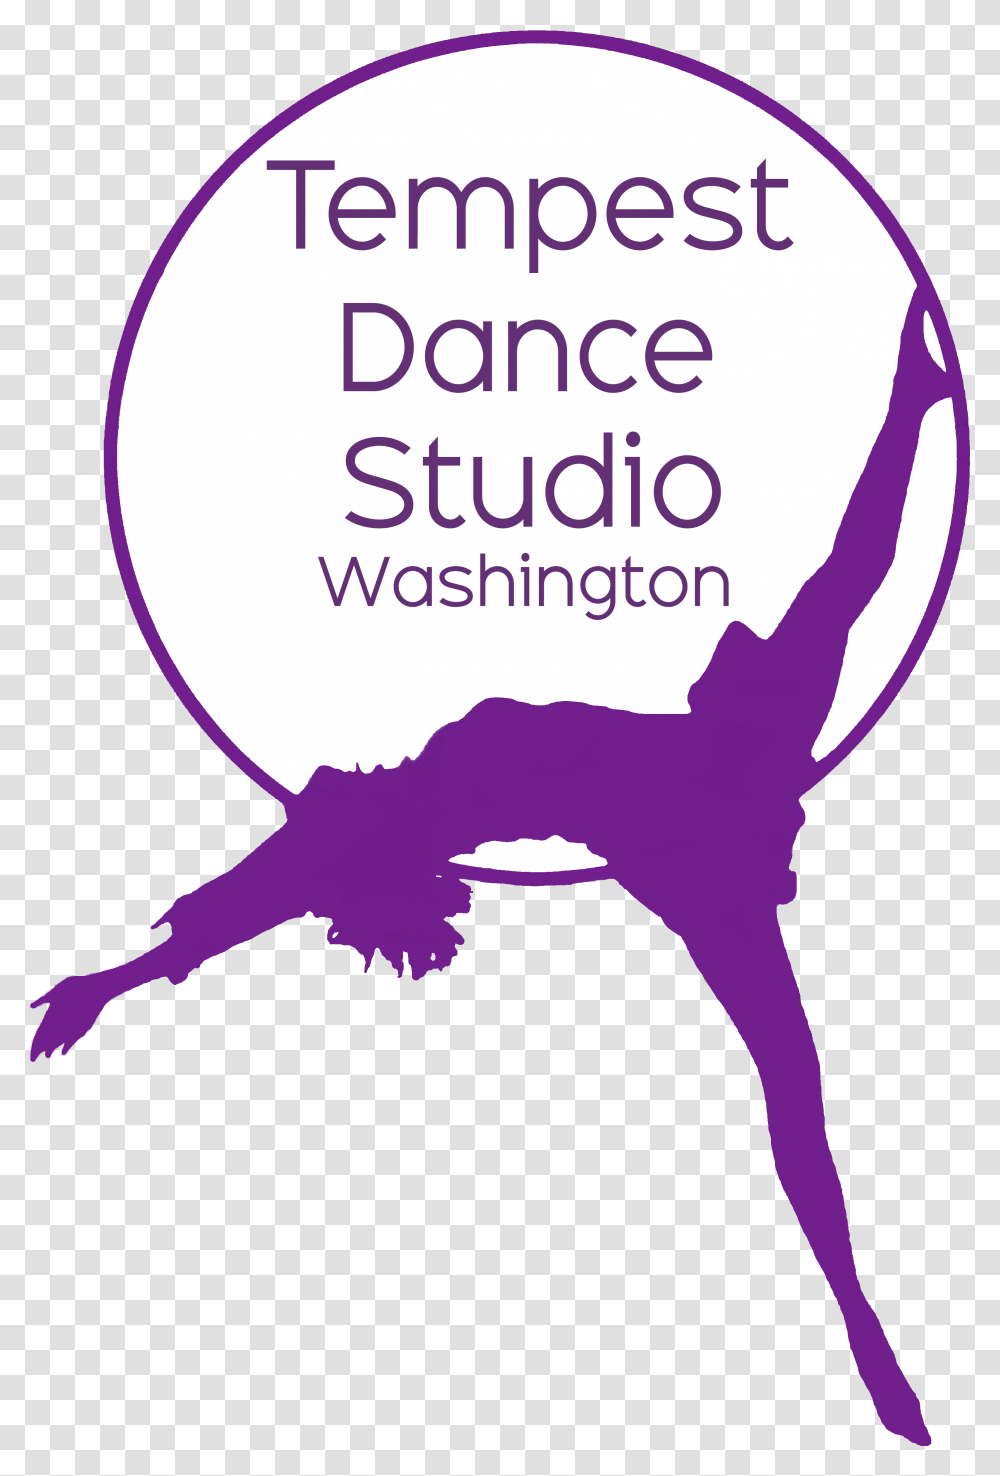 Tempest Dance Studio Washington Tempest Dance Studio, Purple, Text, Graphics, Art Transparent Png